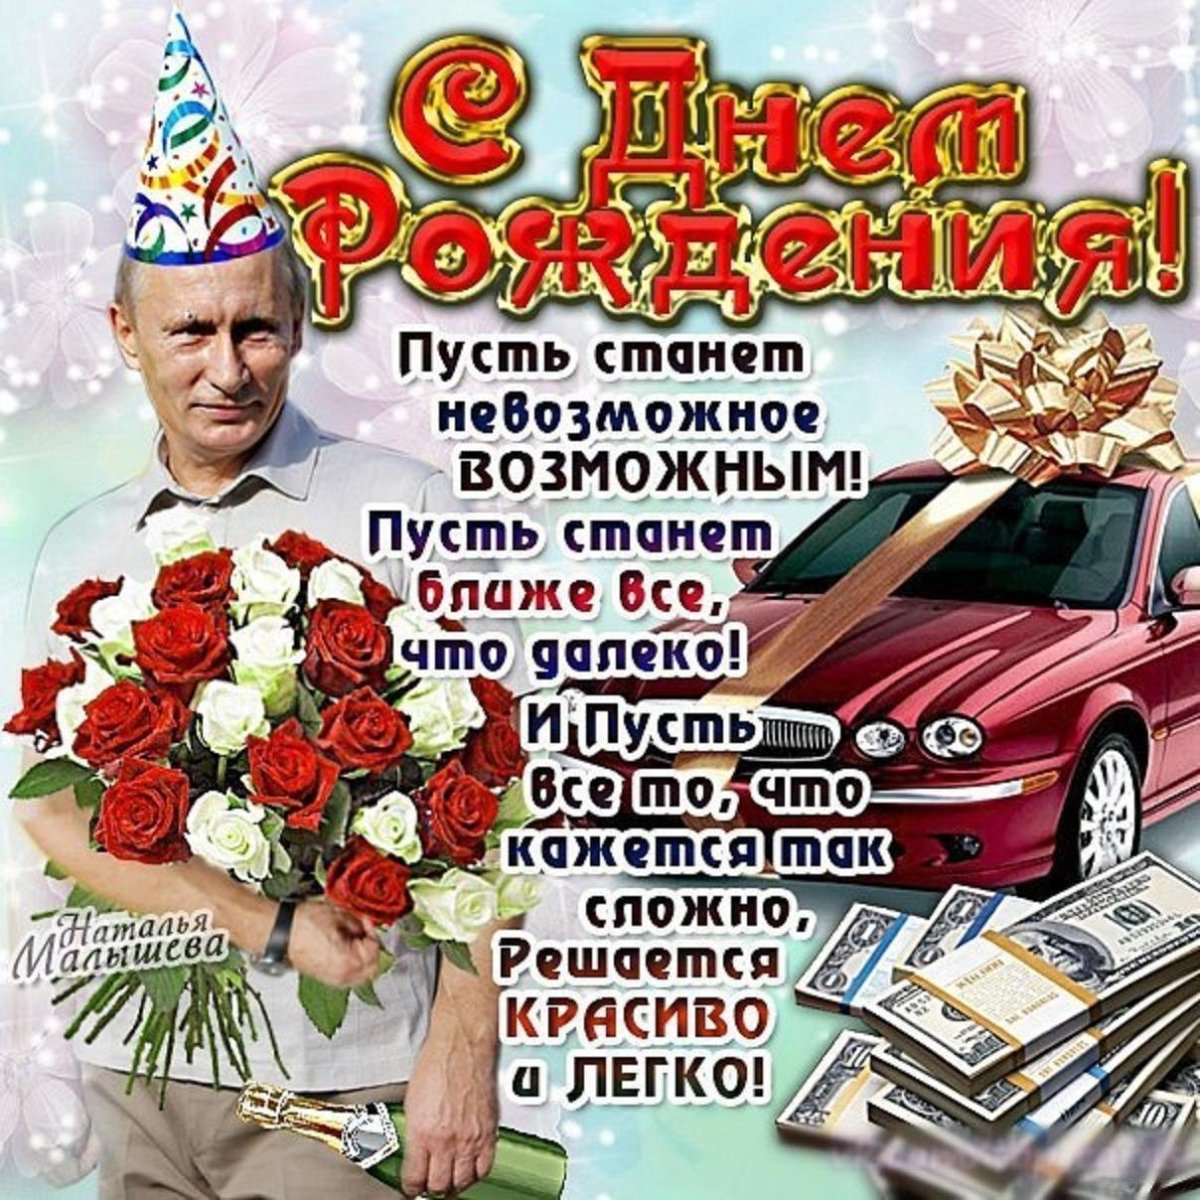 Поздравления с днём рождения шурину голосом Путина